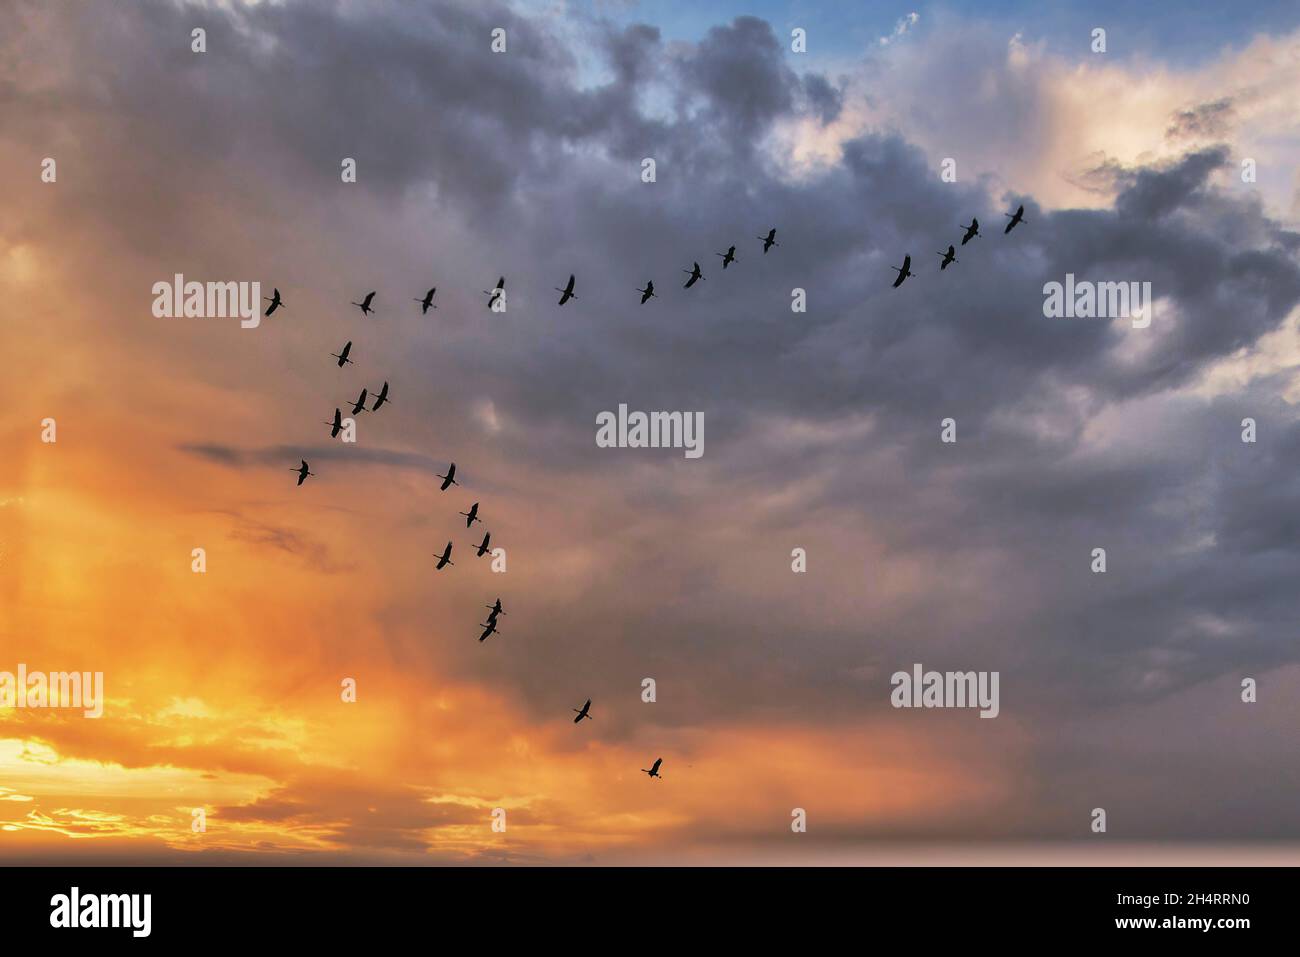 Zugvögel im Flug bei Linum, Schwarm von Kraniche, Sonnenuntergang, Linum, Brandeburgo, Ostdeutschland Foto Stock